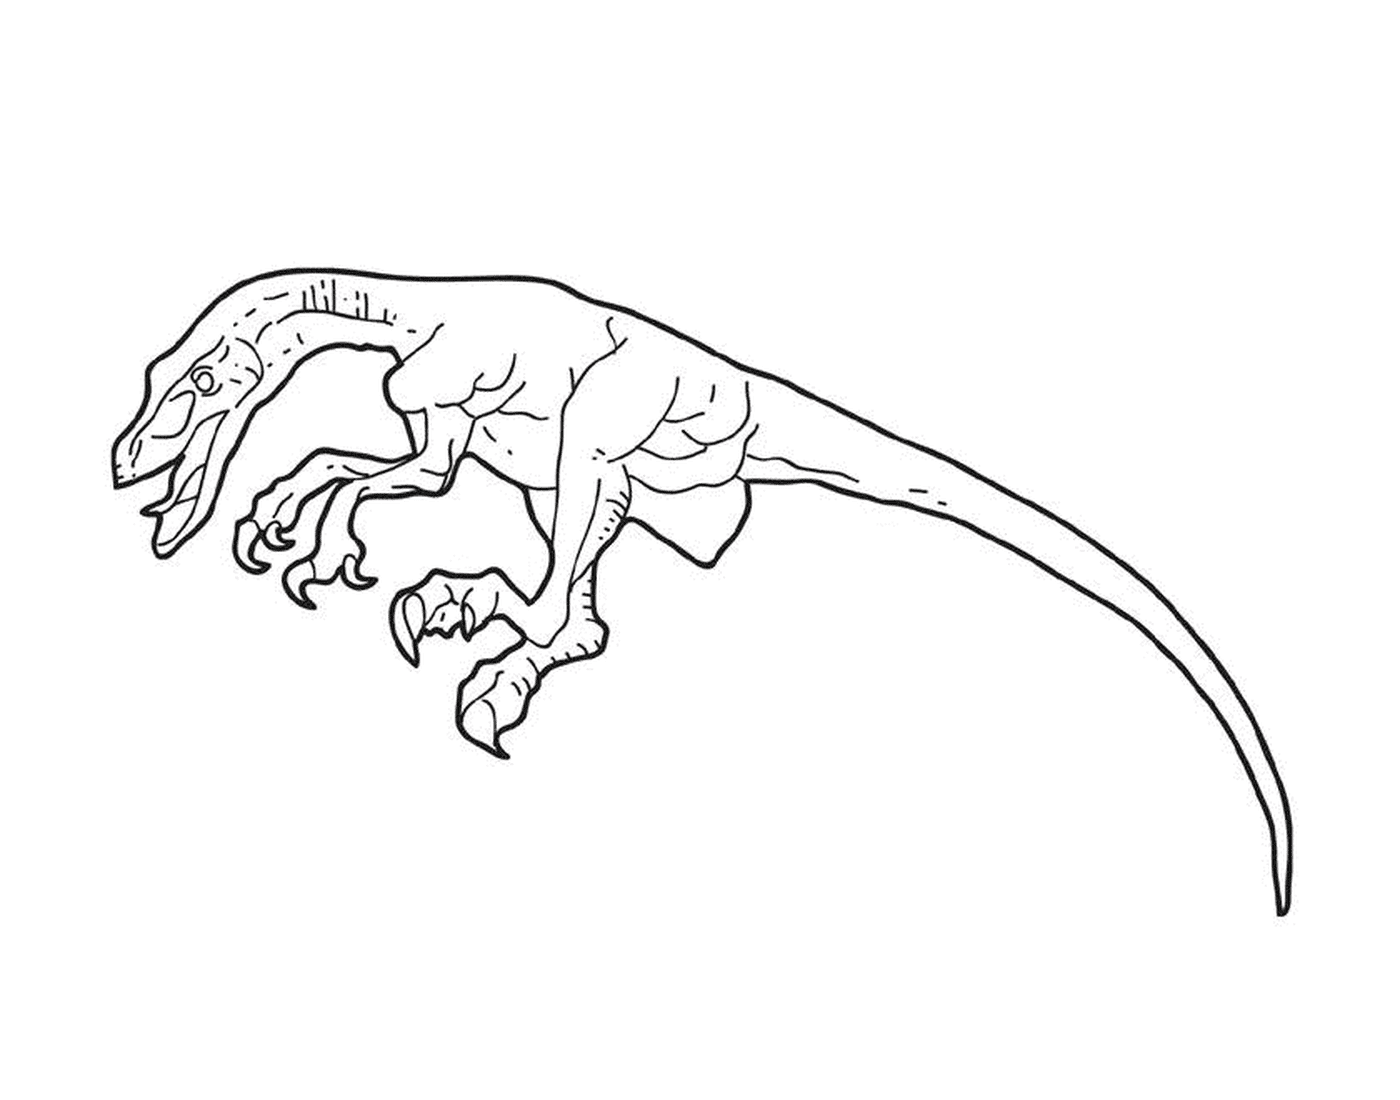  Un dinosaurio dibujado en tinta 